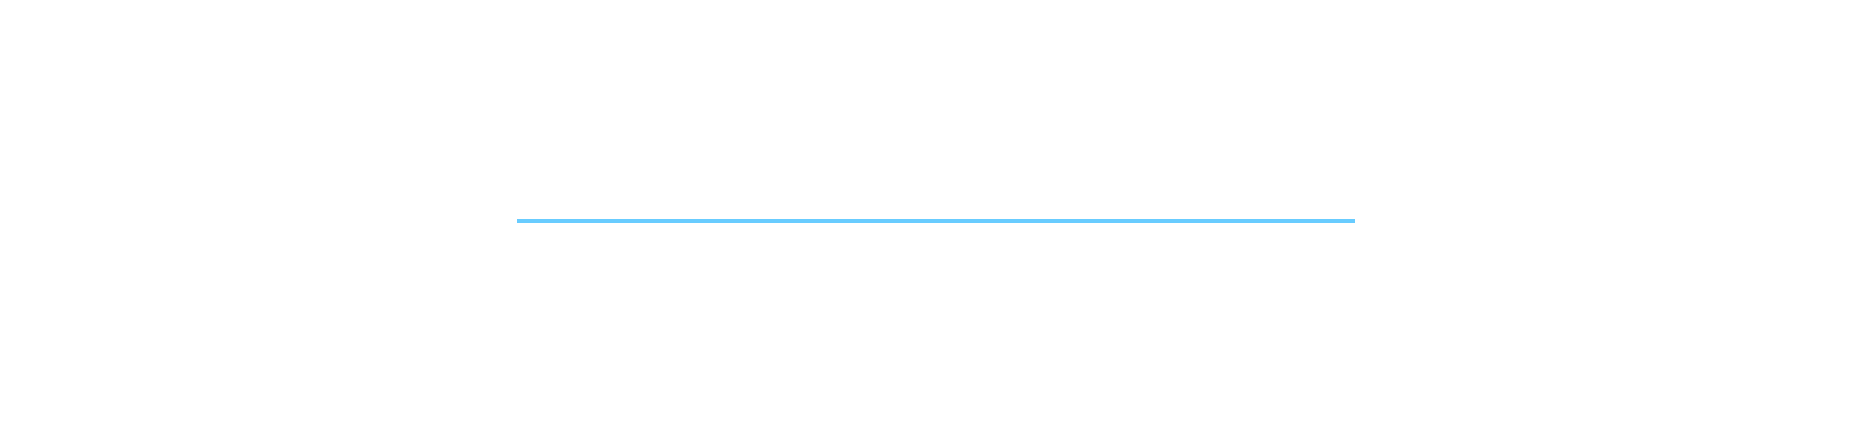 2024 Panel